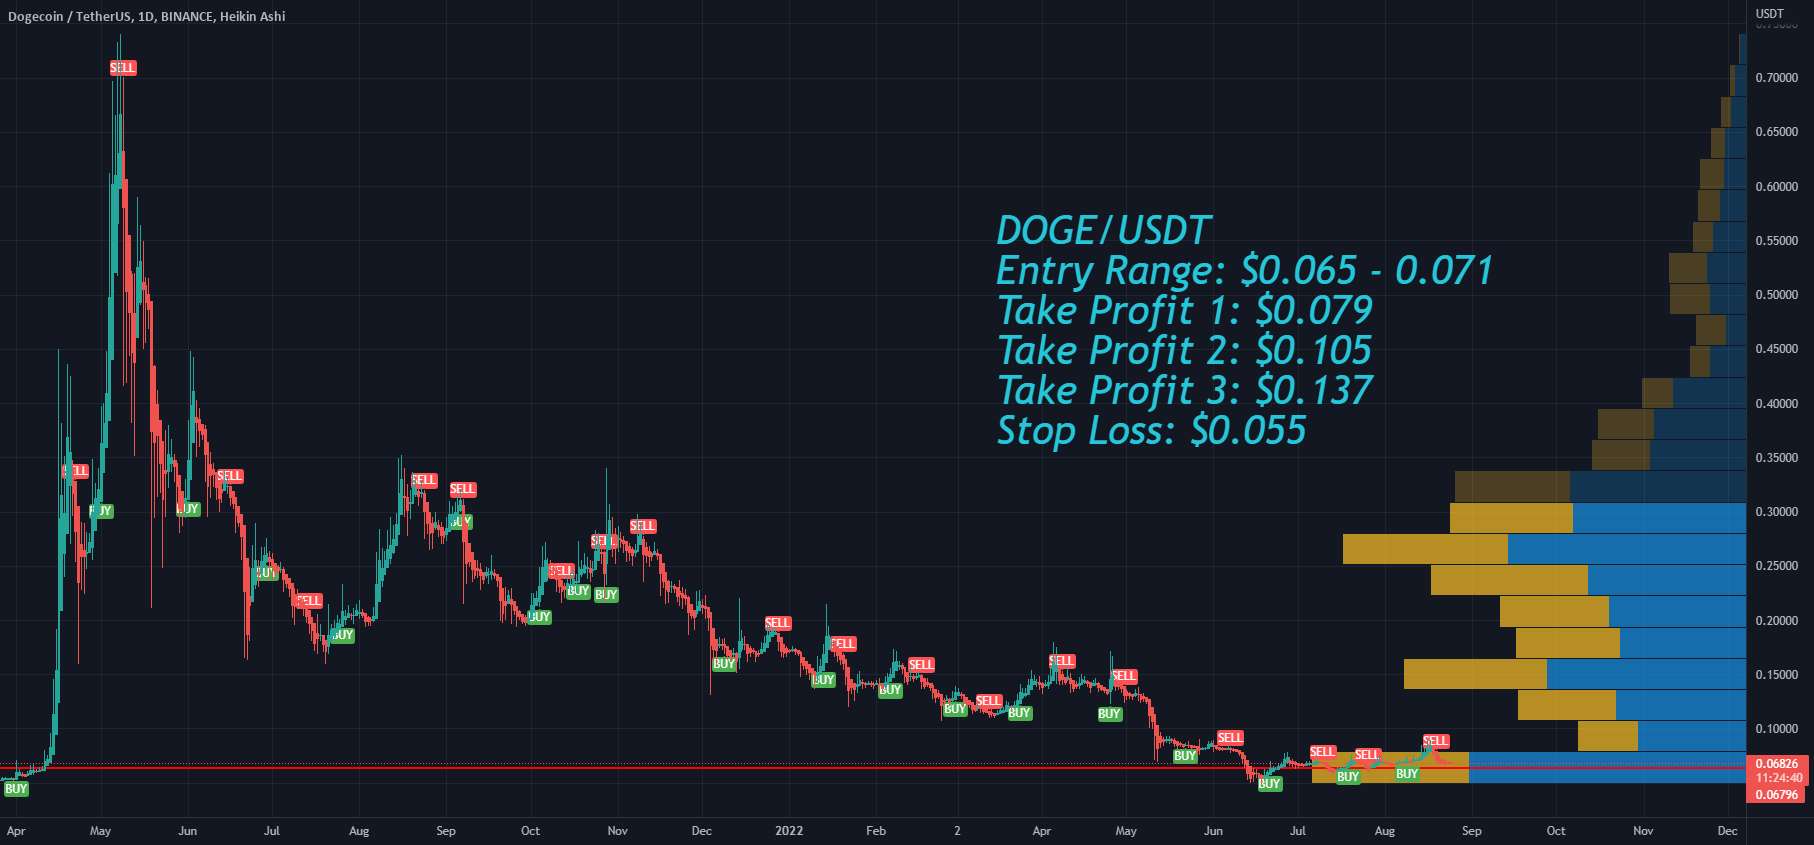  تحلیل دوج کوین - دامنه ورود طولانی Dogecoin DOGE، سود بگیرید و ضرر را متوقف کنید